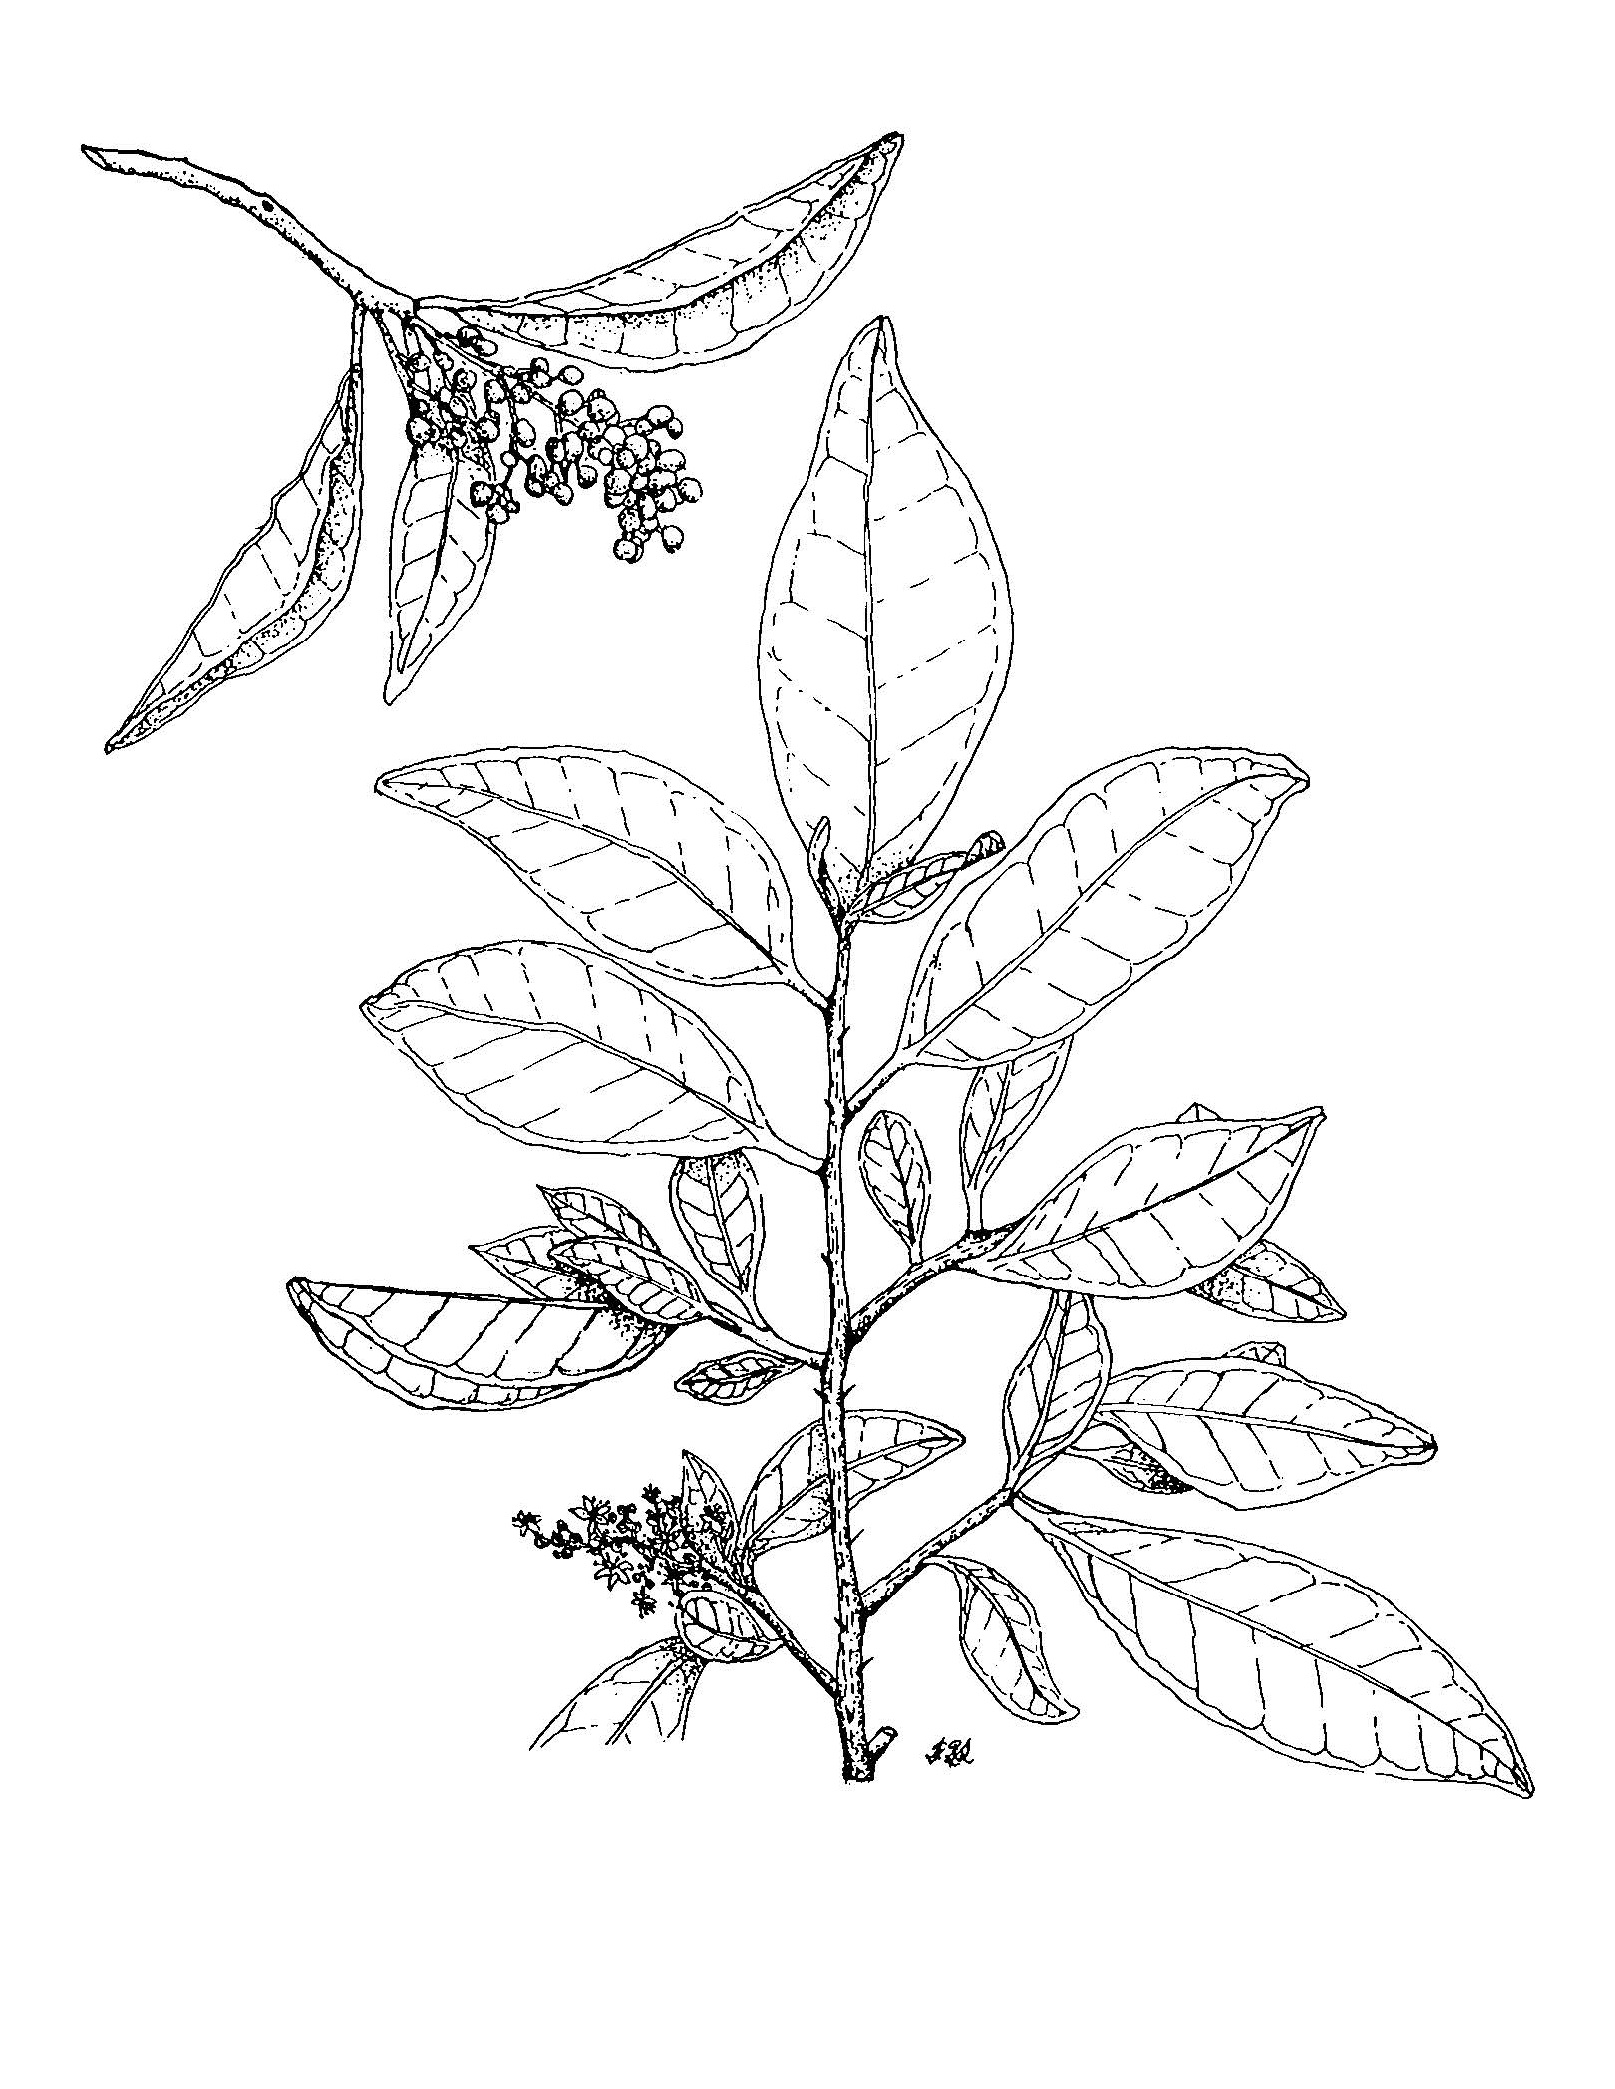 Zanthoxylum monophyllum image